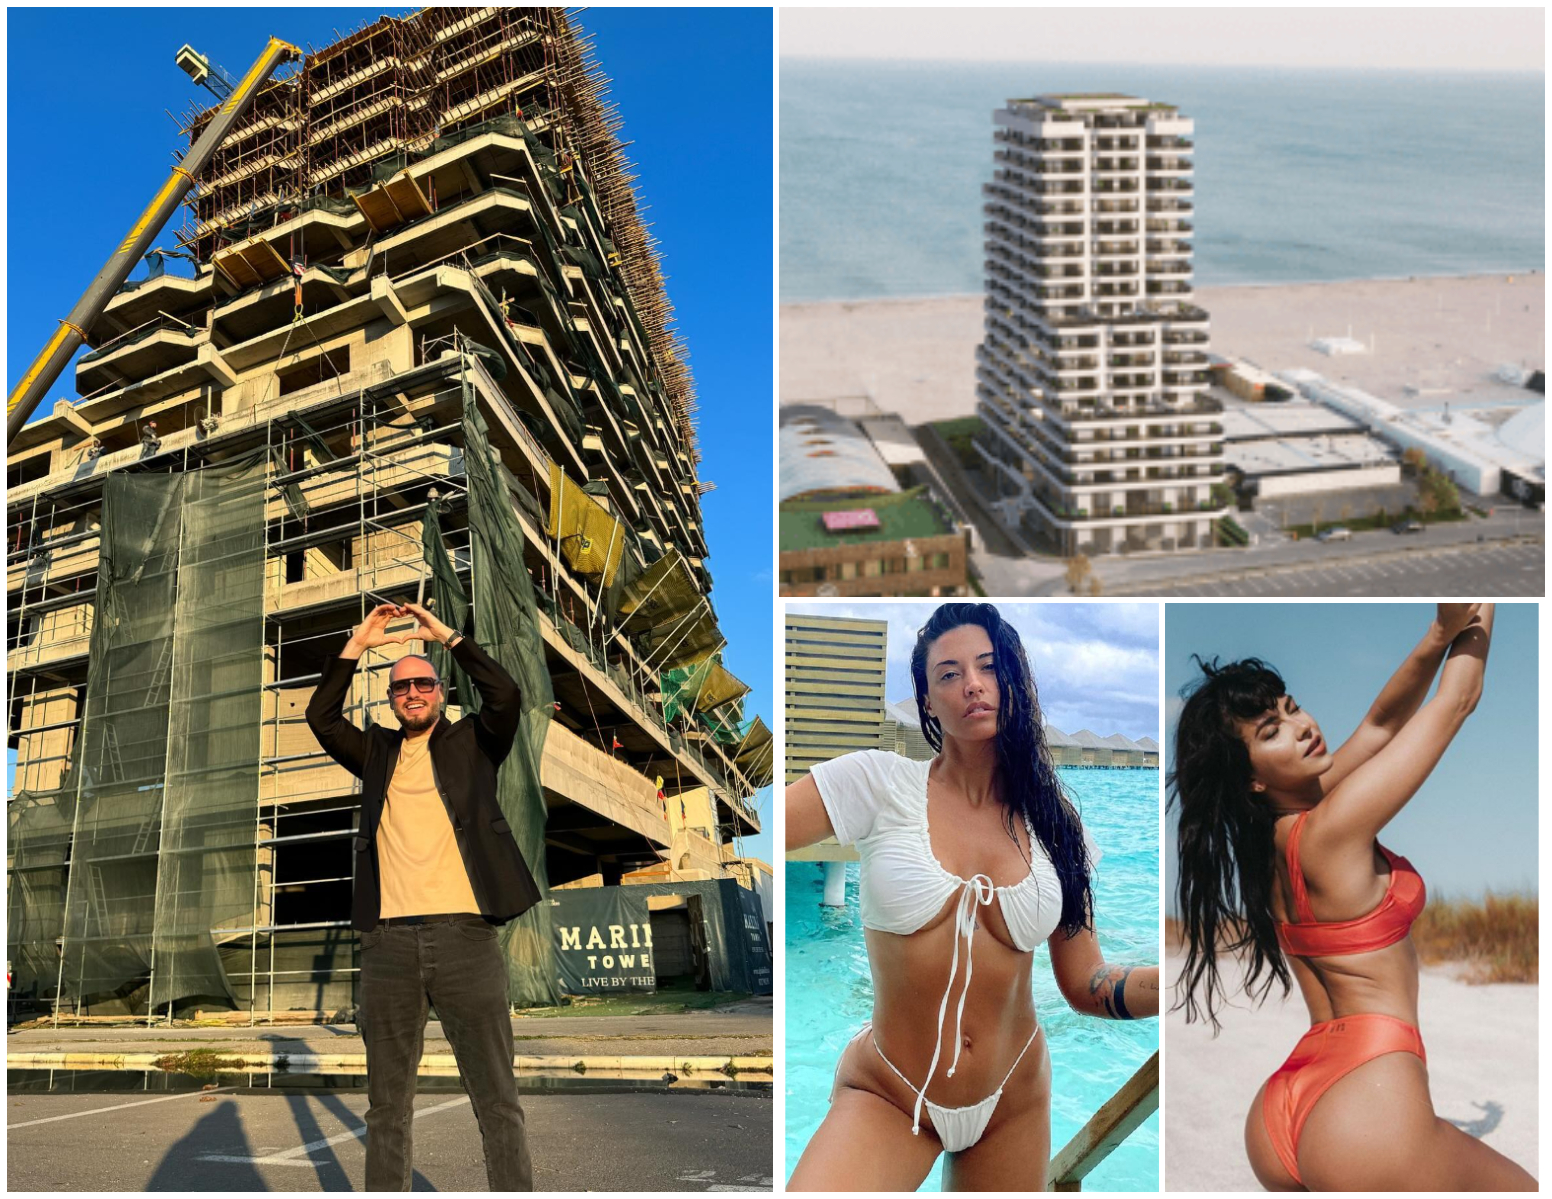 Inna, Selly, Antonia și BRomania și-au luat apartamente de lux în viitorul ”bloc al milionarilor” de pe litoral! Minim 350.000 de euro te costă să locuiești în mai scumpă și spectaculoasă clădire de la mare